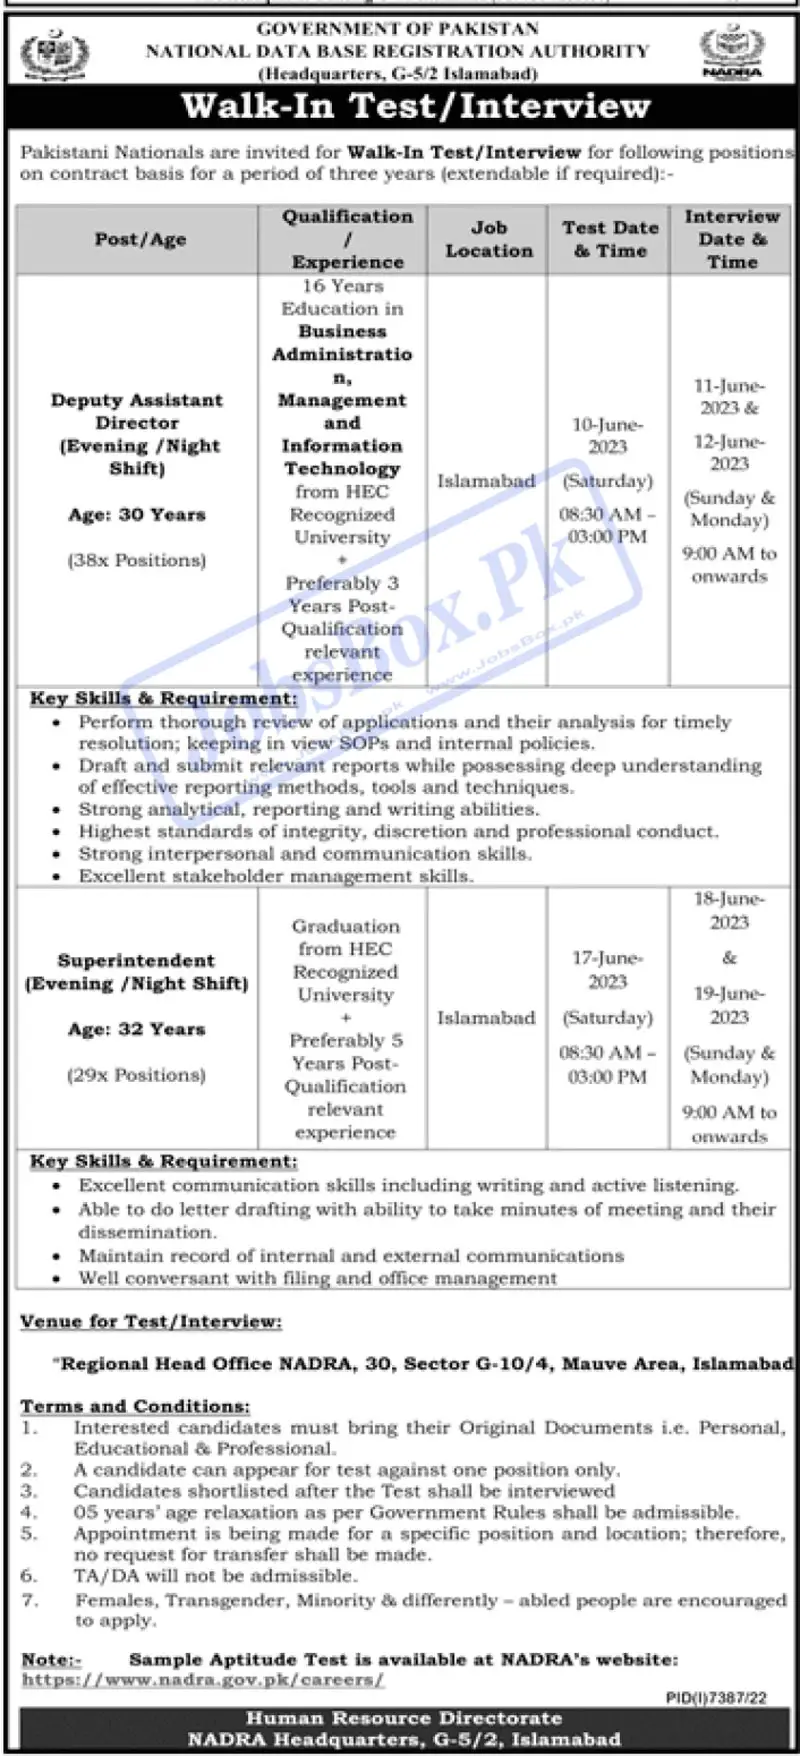 NADRA Regional Head Office Islamabad Jobs 2023